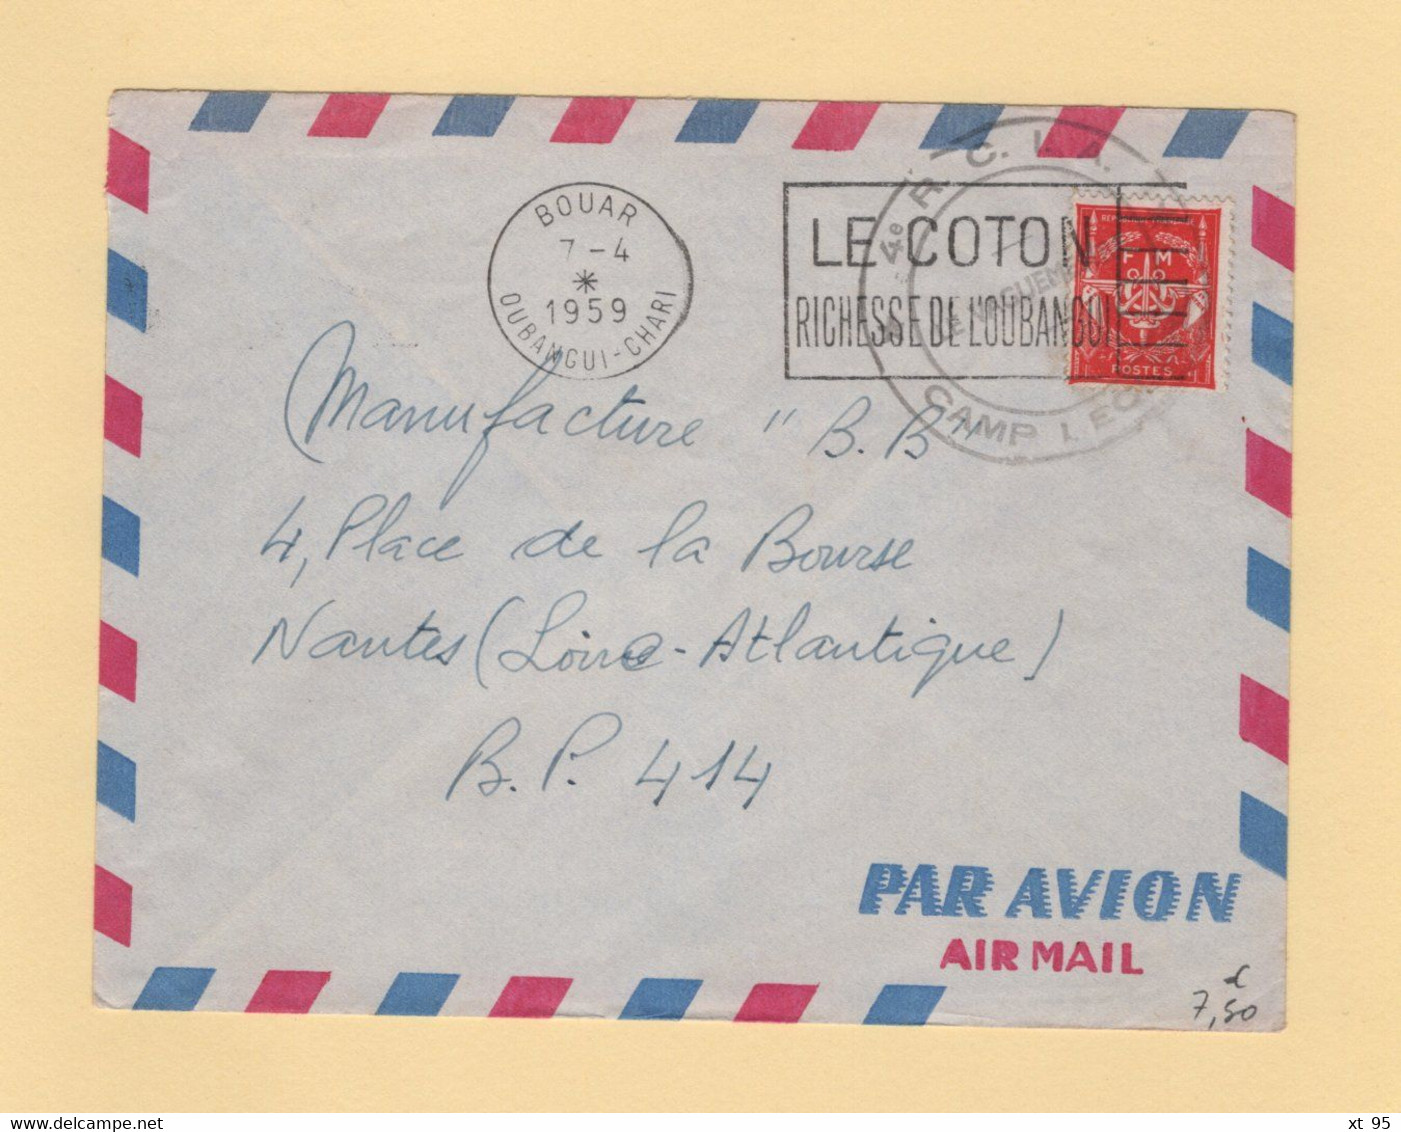 Timbre FM - Oubangui Chari - Bouar - 1959 - Camp Leclerc - 4e RCIA - Militärische Franchisemarken